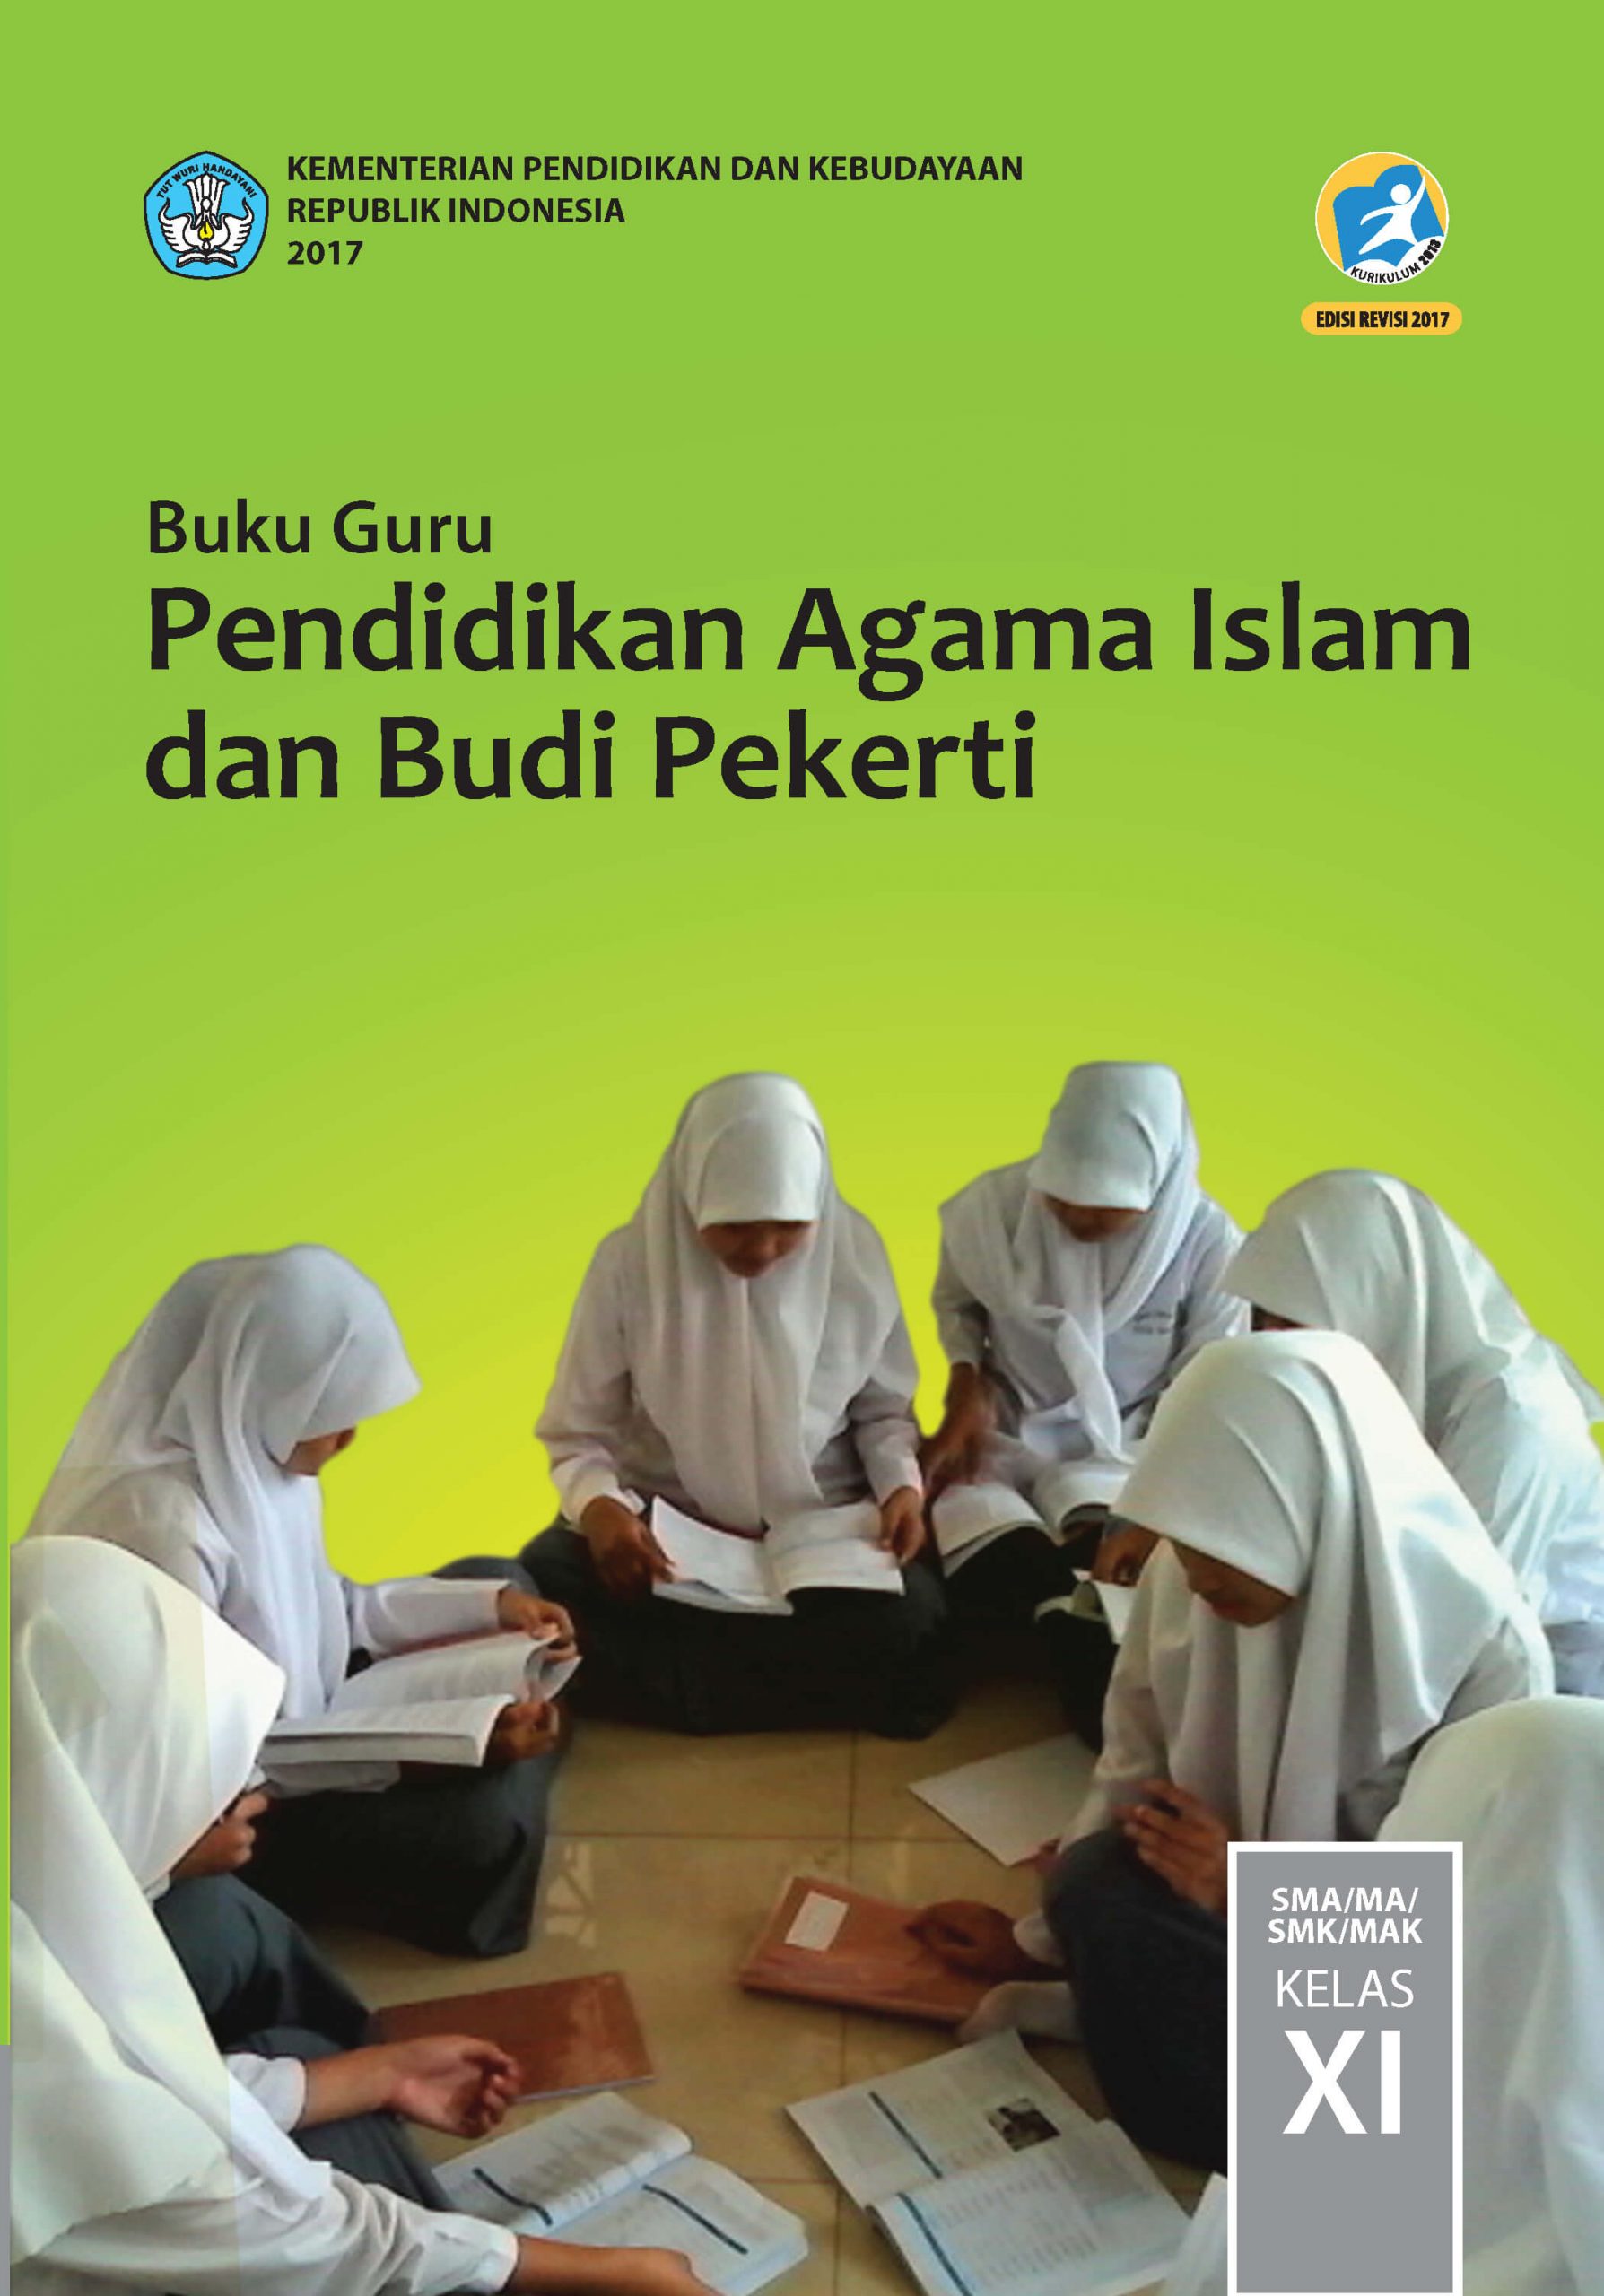 Download Buku Pendidikan Agama Islam dan Budi Pekerti